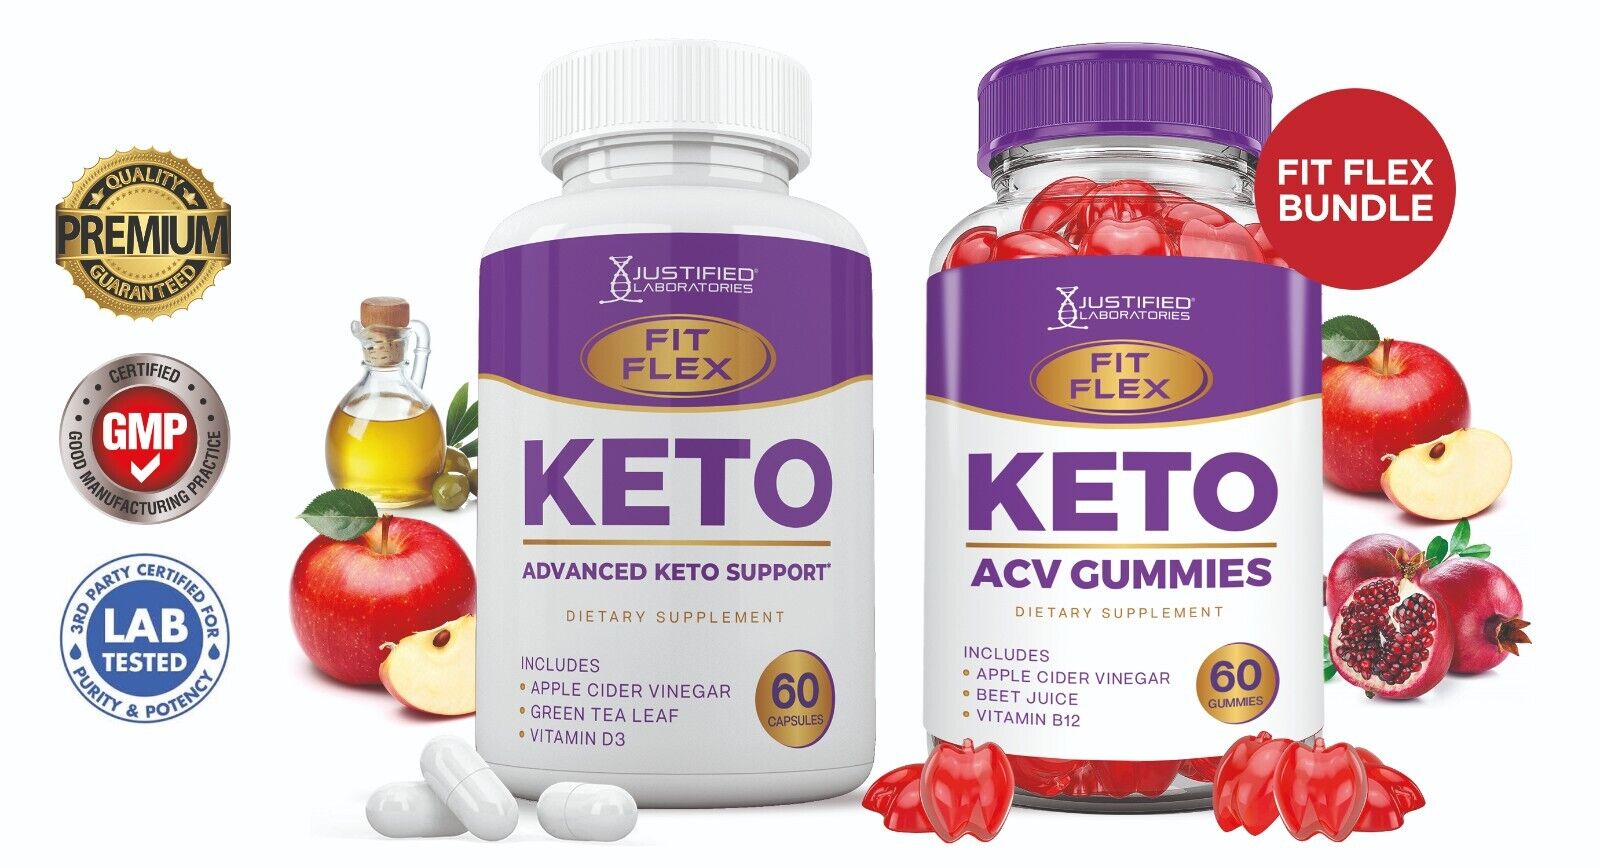 Fit Flex Keto ACV Gummies 1000mg & Keto ACV Pills 1275MG Bundle Justified Laboratories